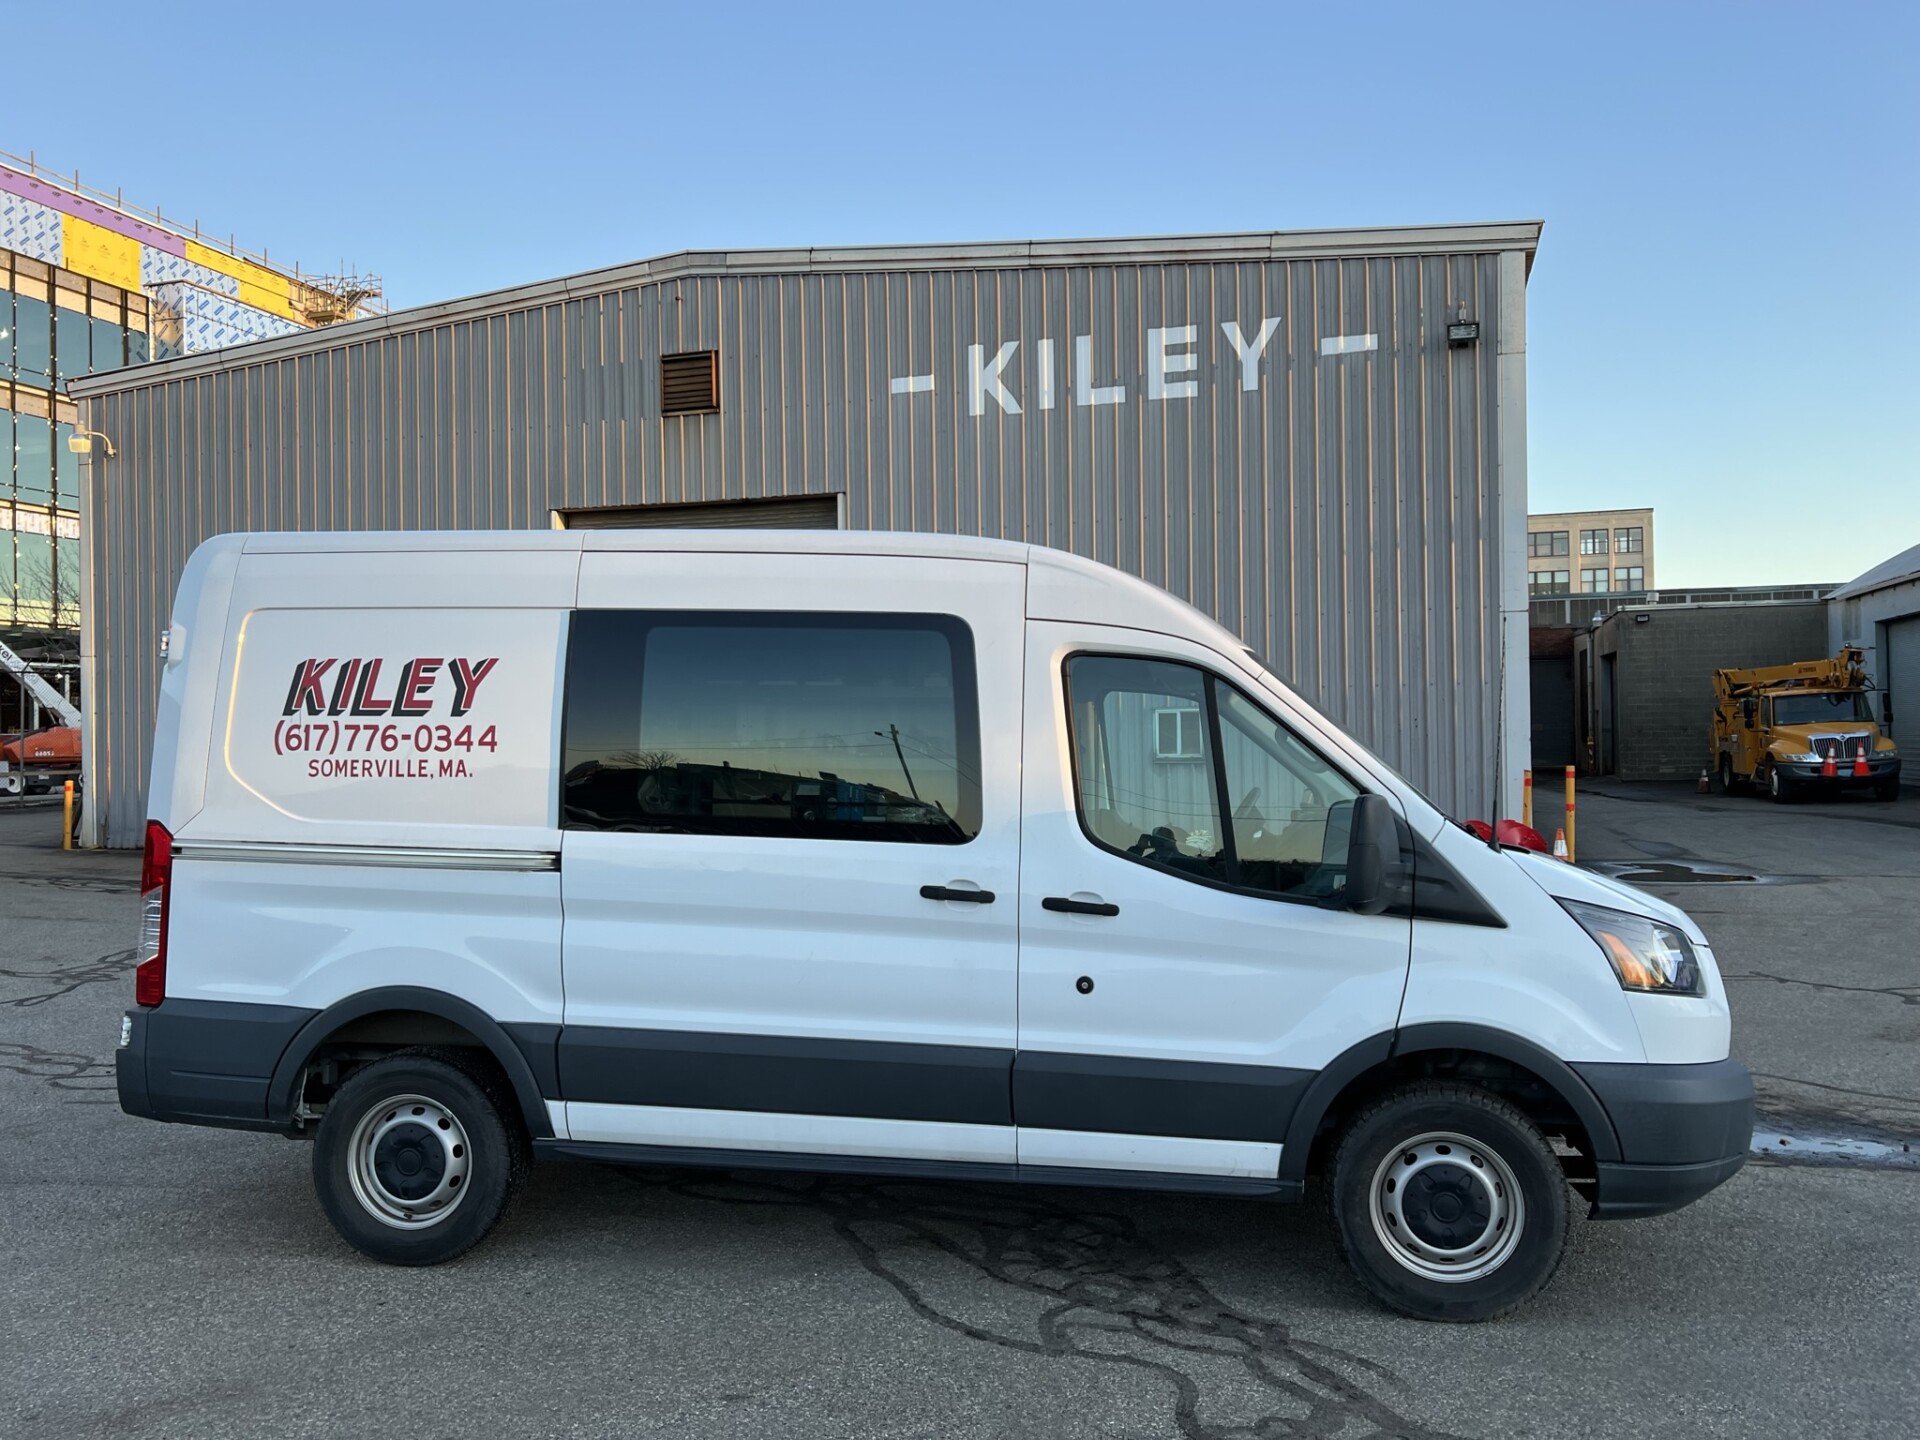 J.A. Kiley Service and Parts Van